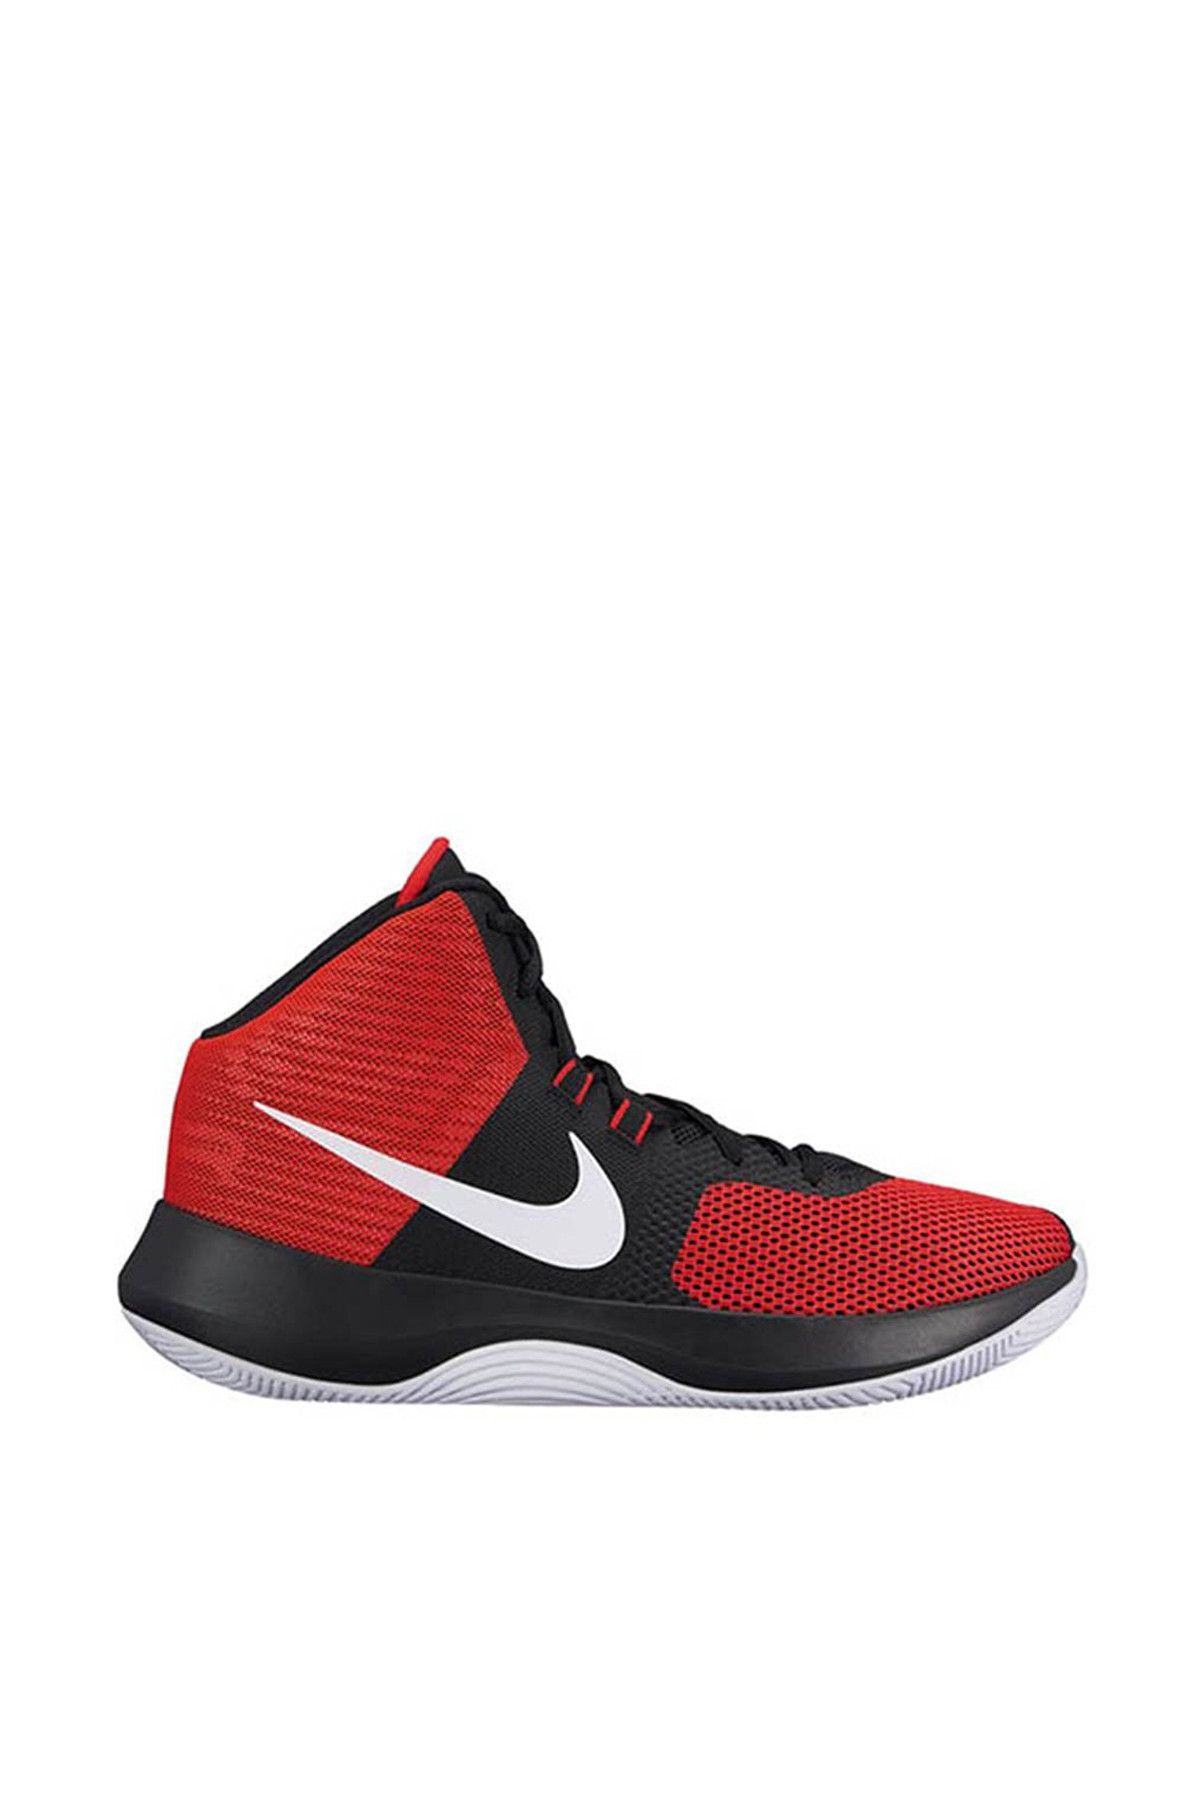 Nike Erkek Basketbol Ayakkabısı Air Precision - 898455-601